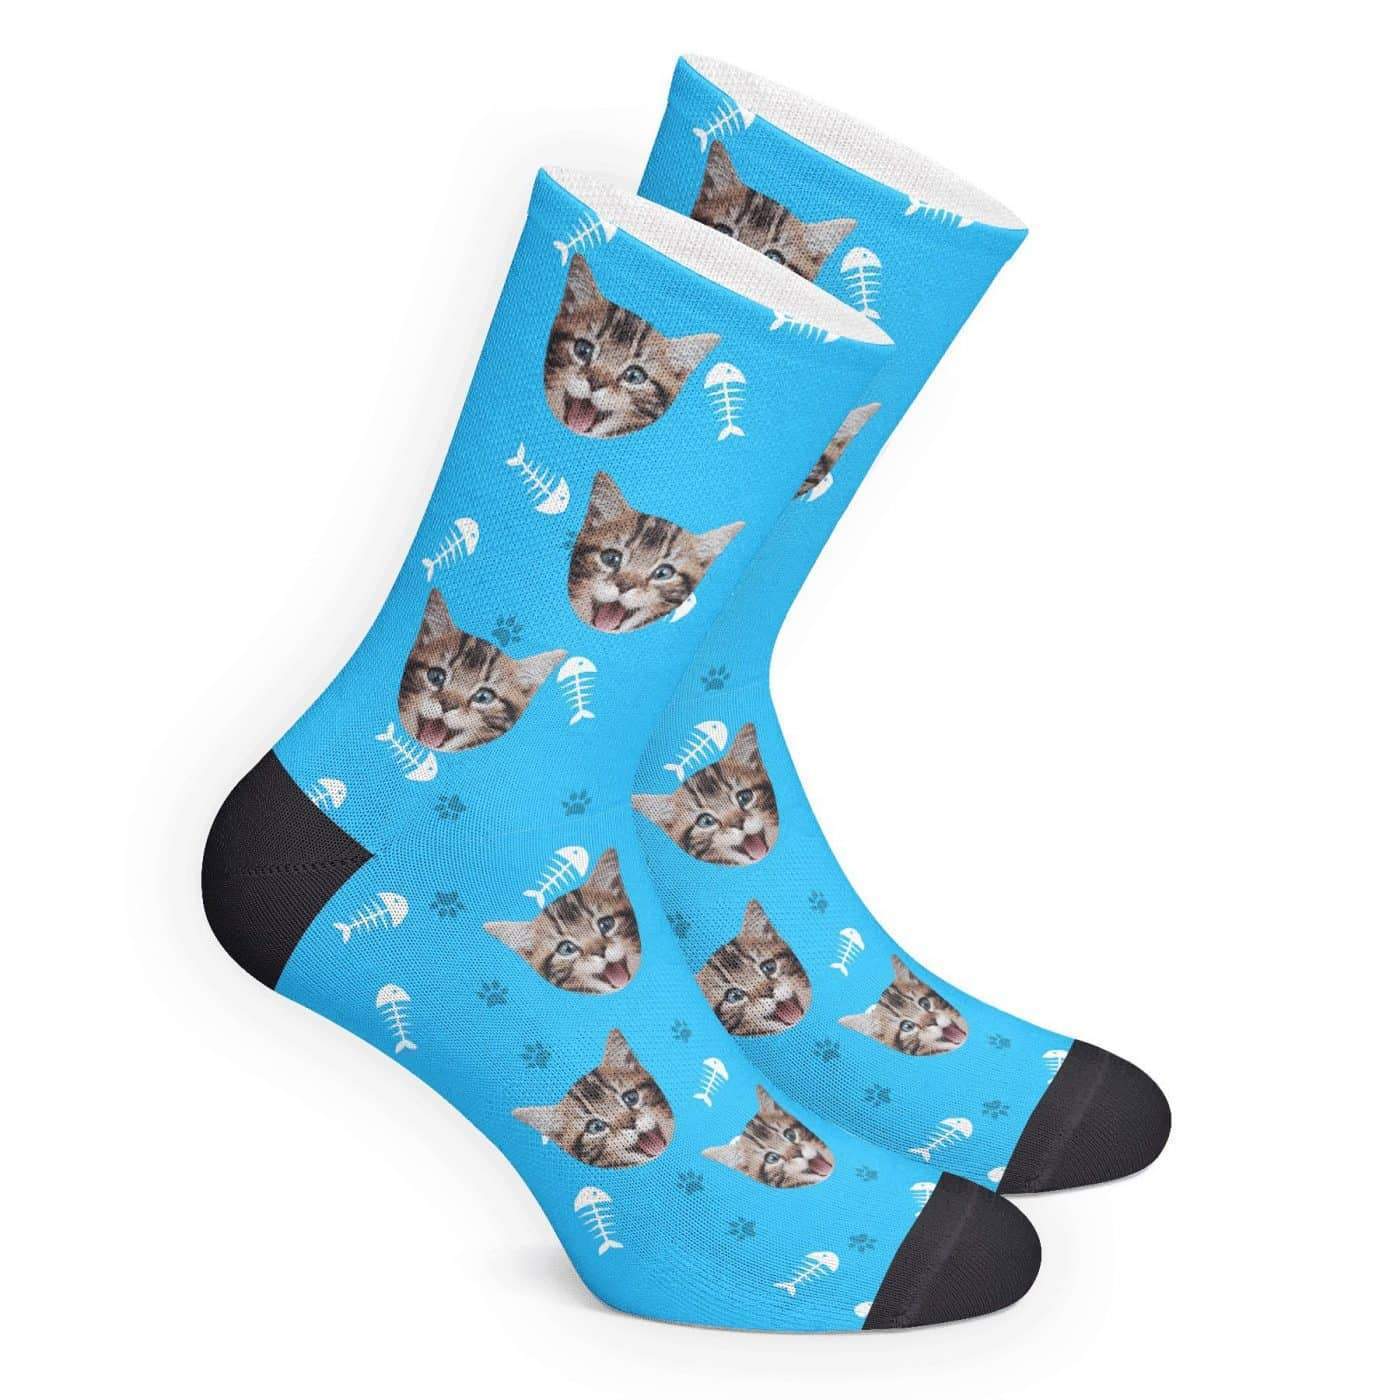 Custom Cat Socks - Getphotoblanket